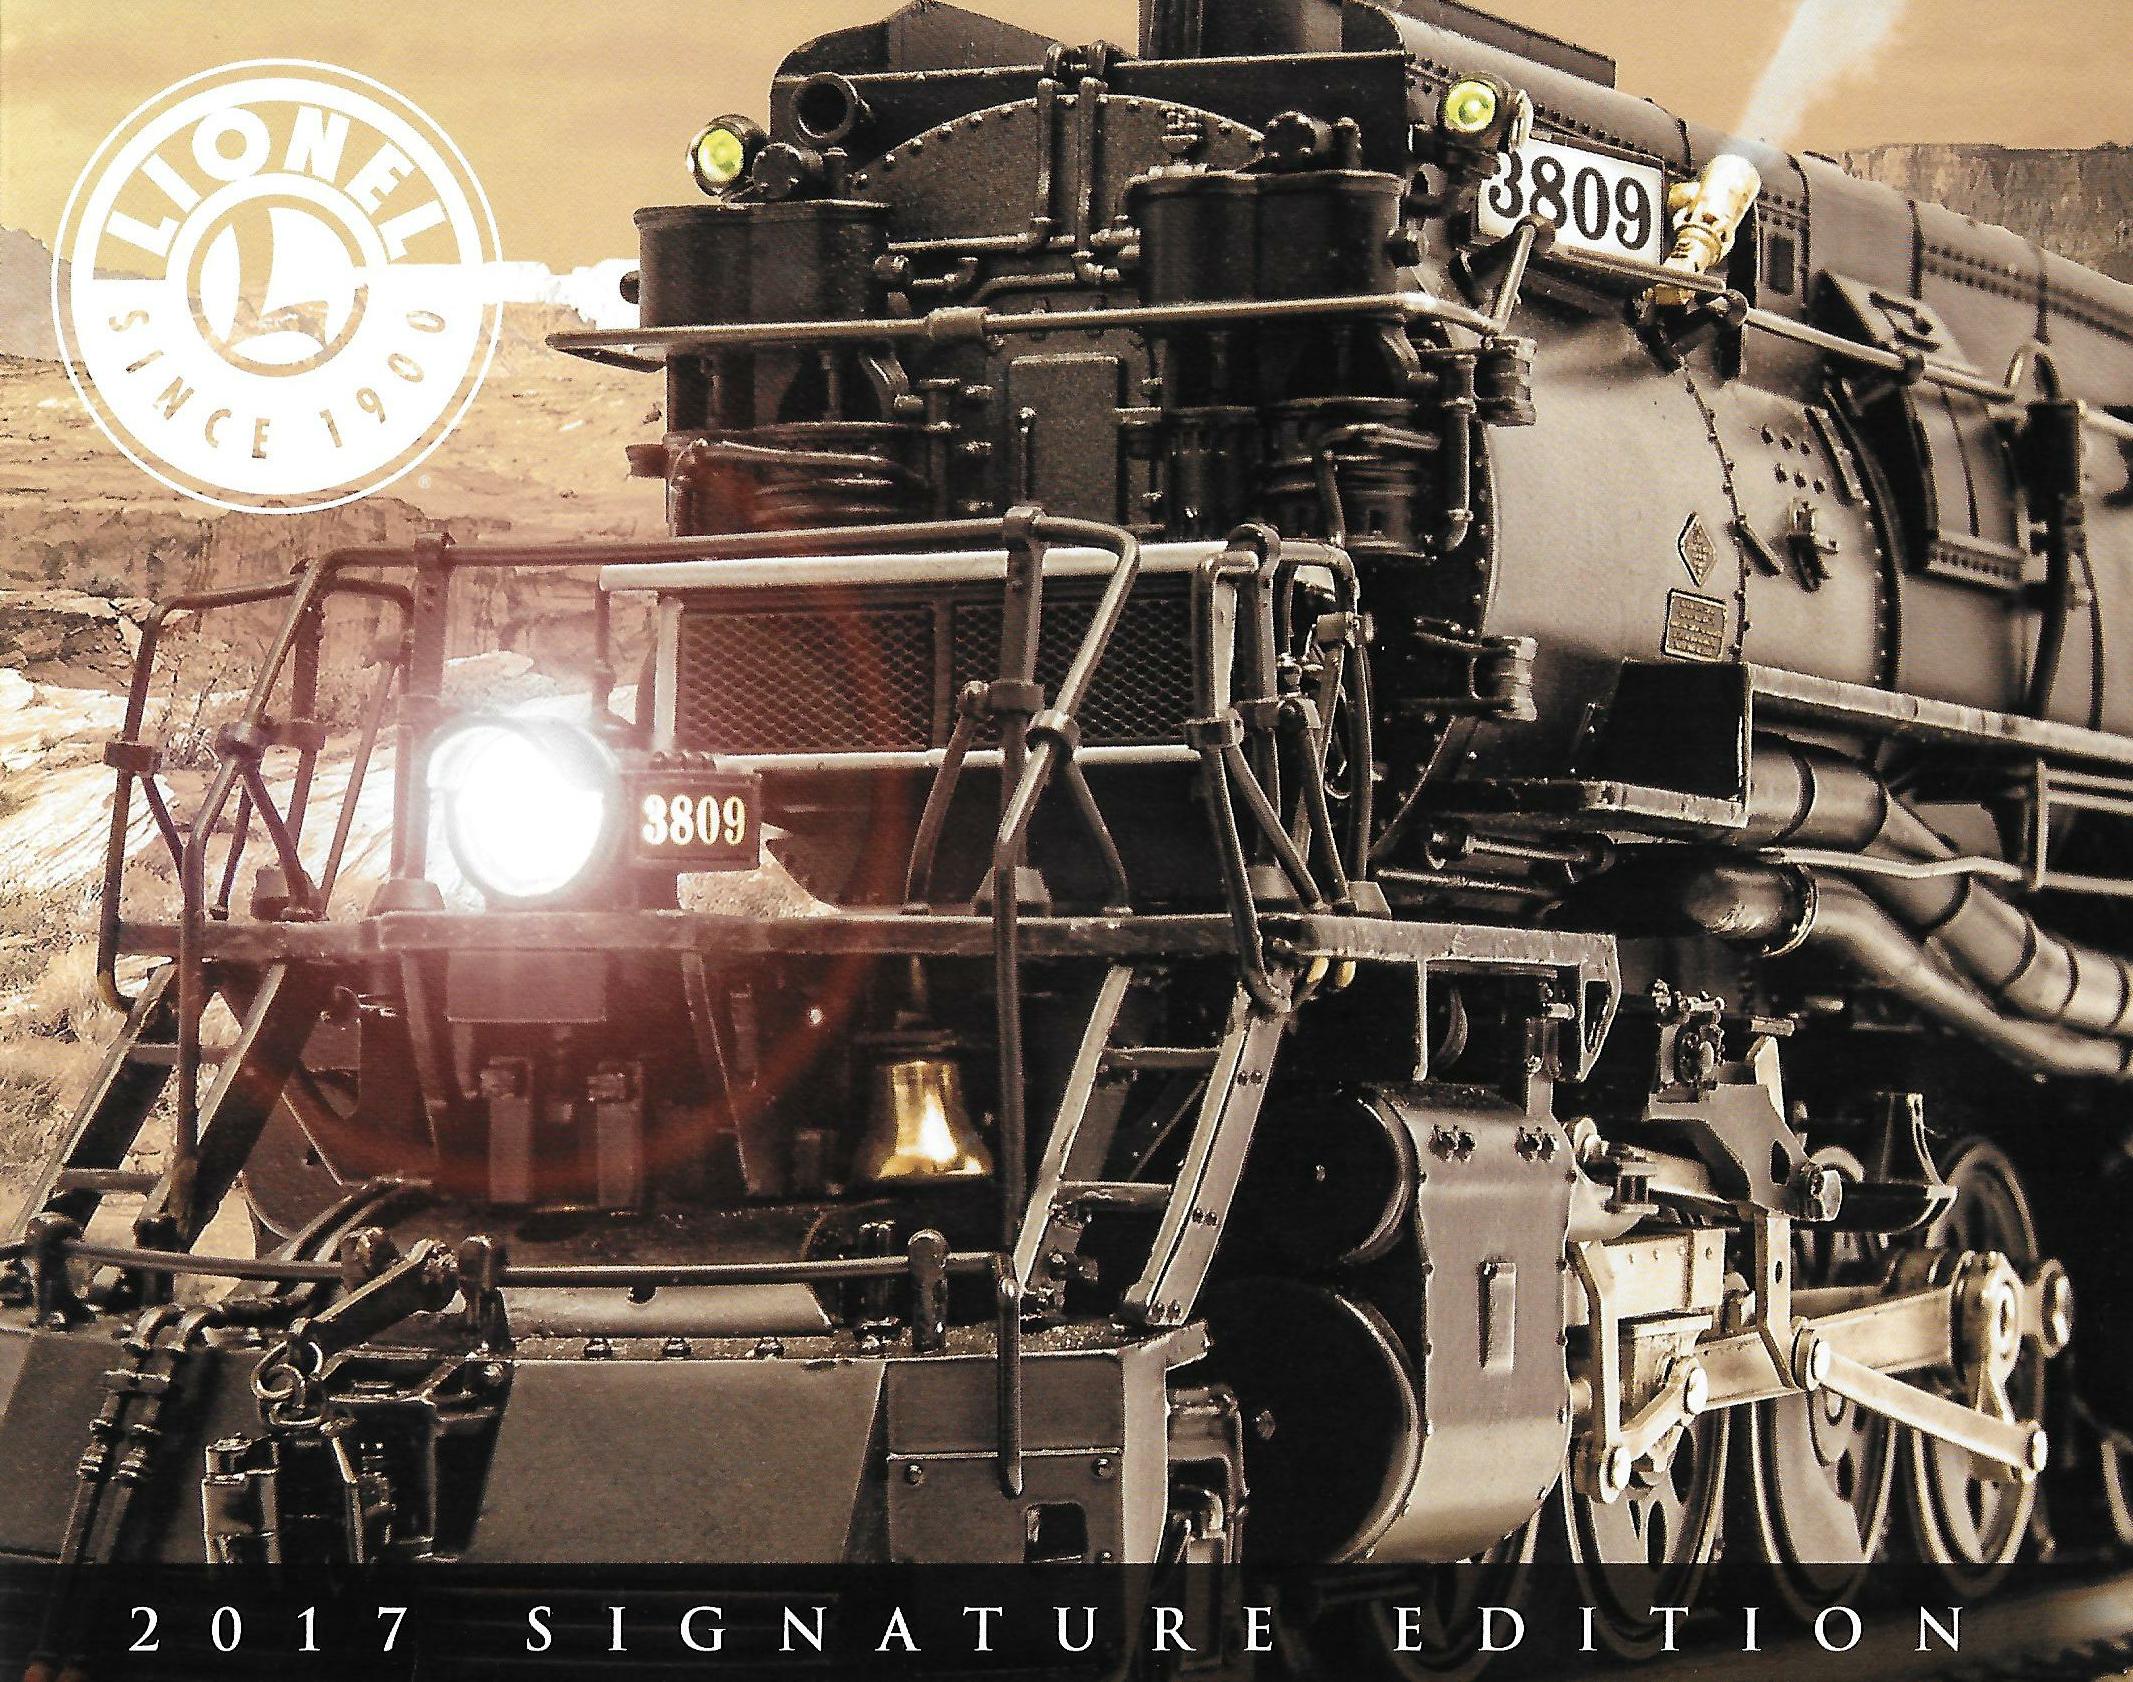 Lionel 2017 Signature Edition Catalog image